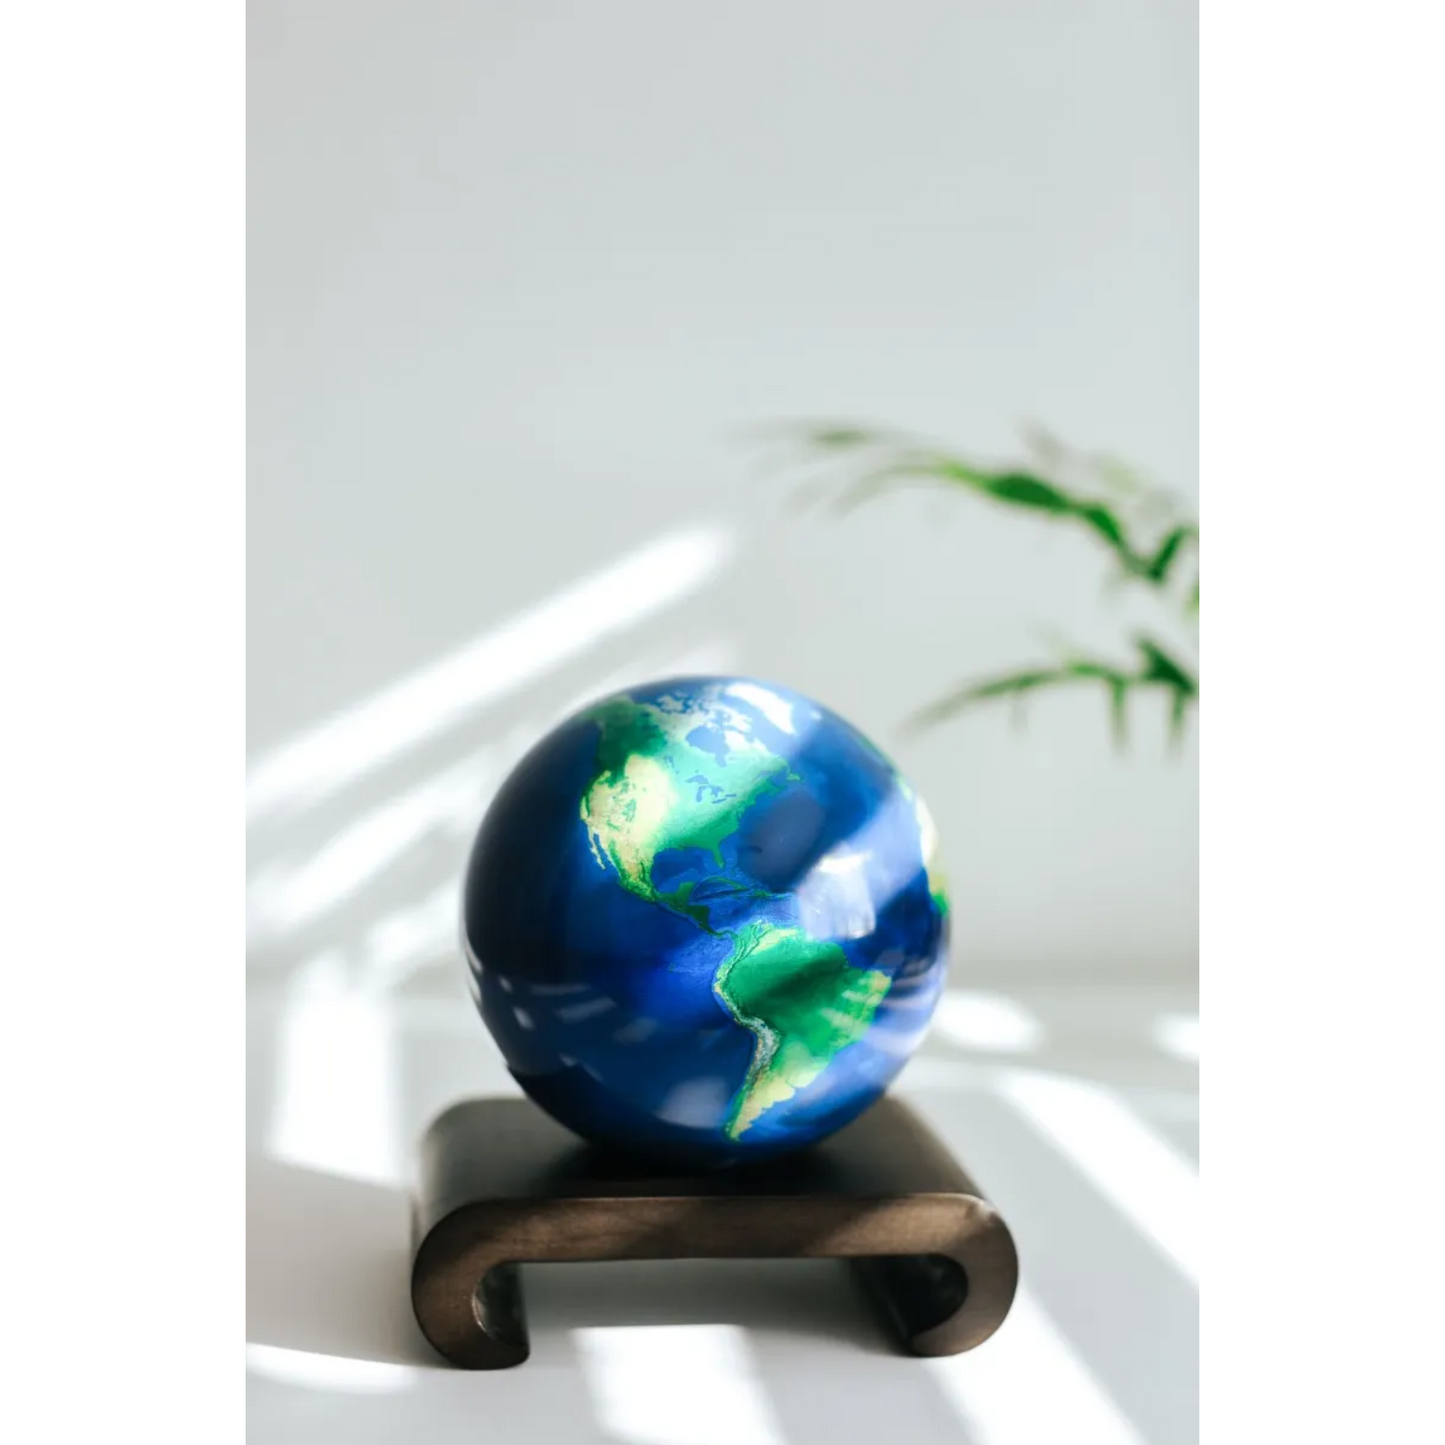 Mova Globe Earth Self Rotating Globe